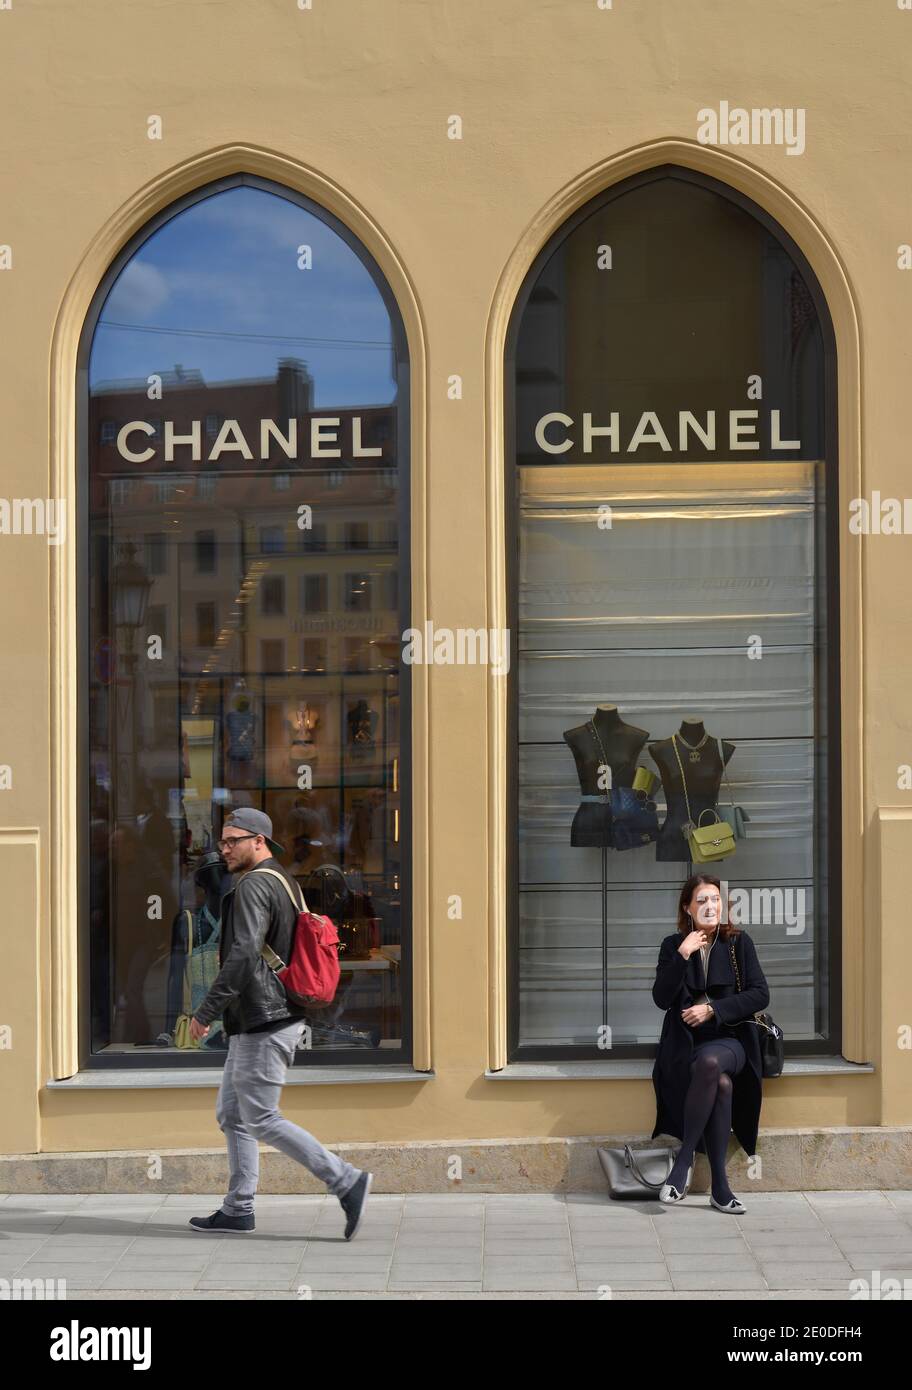 Chanel, Maximilianstrasse, Muenchen, Bayern, Deutschland Stock Photo - Alamy